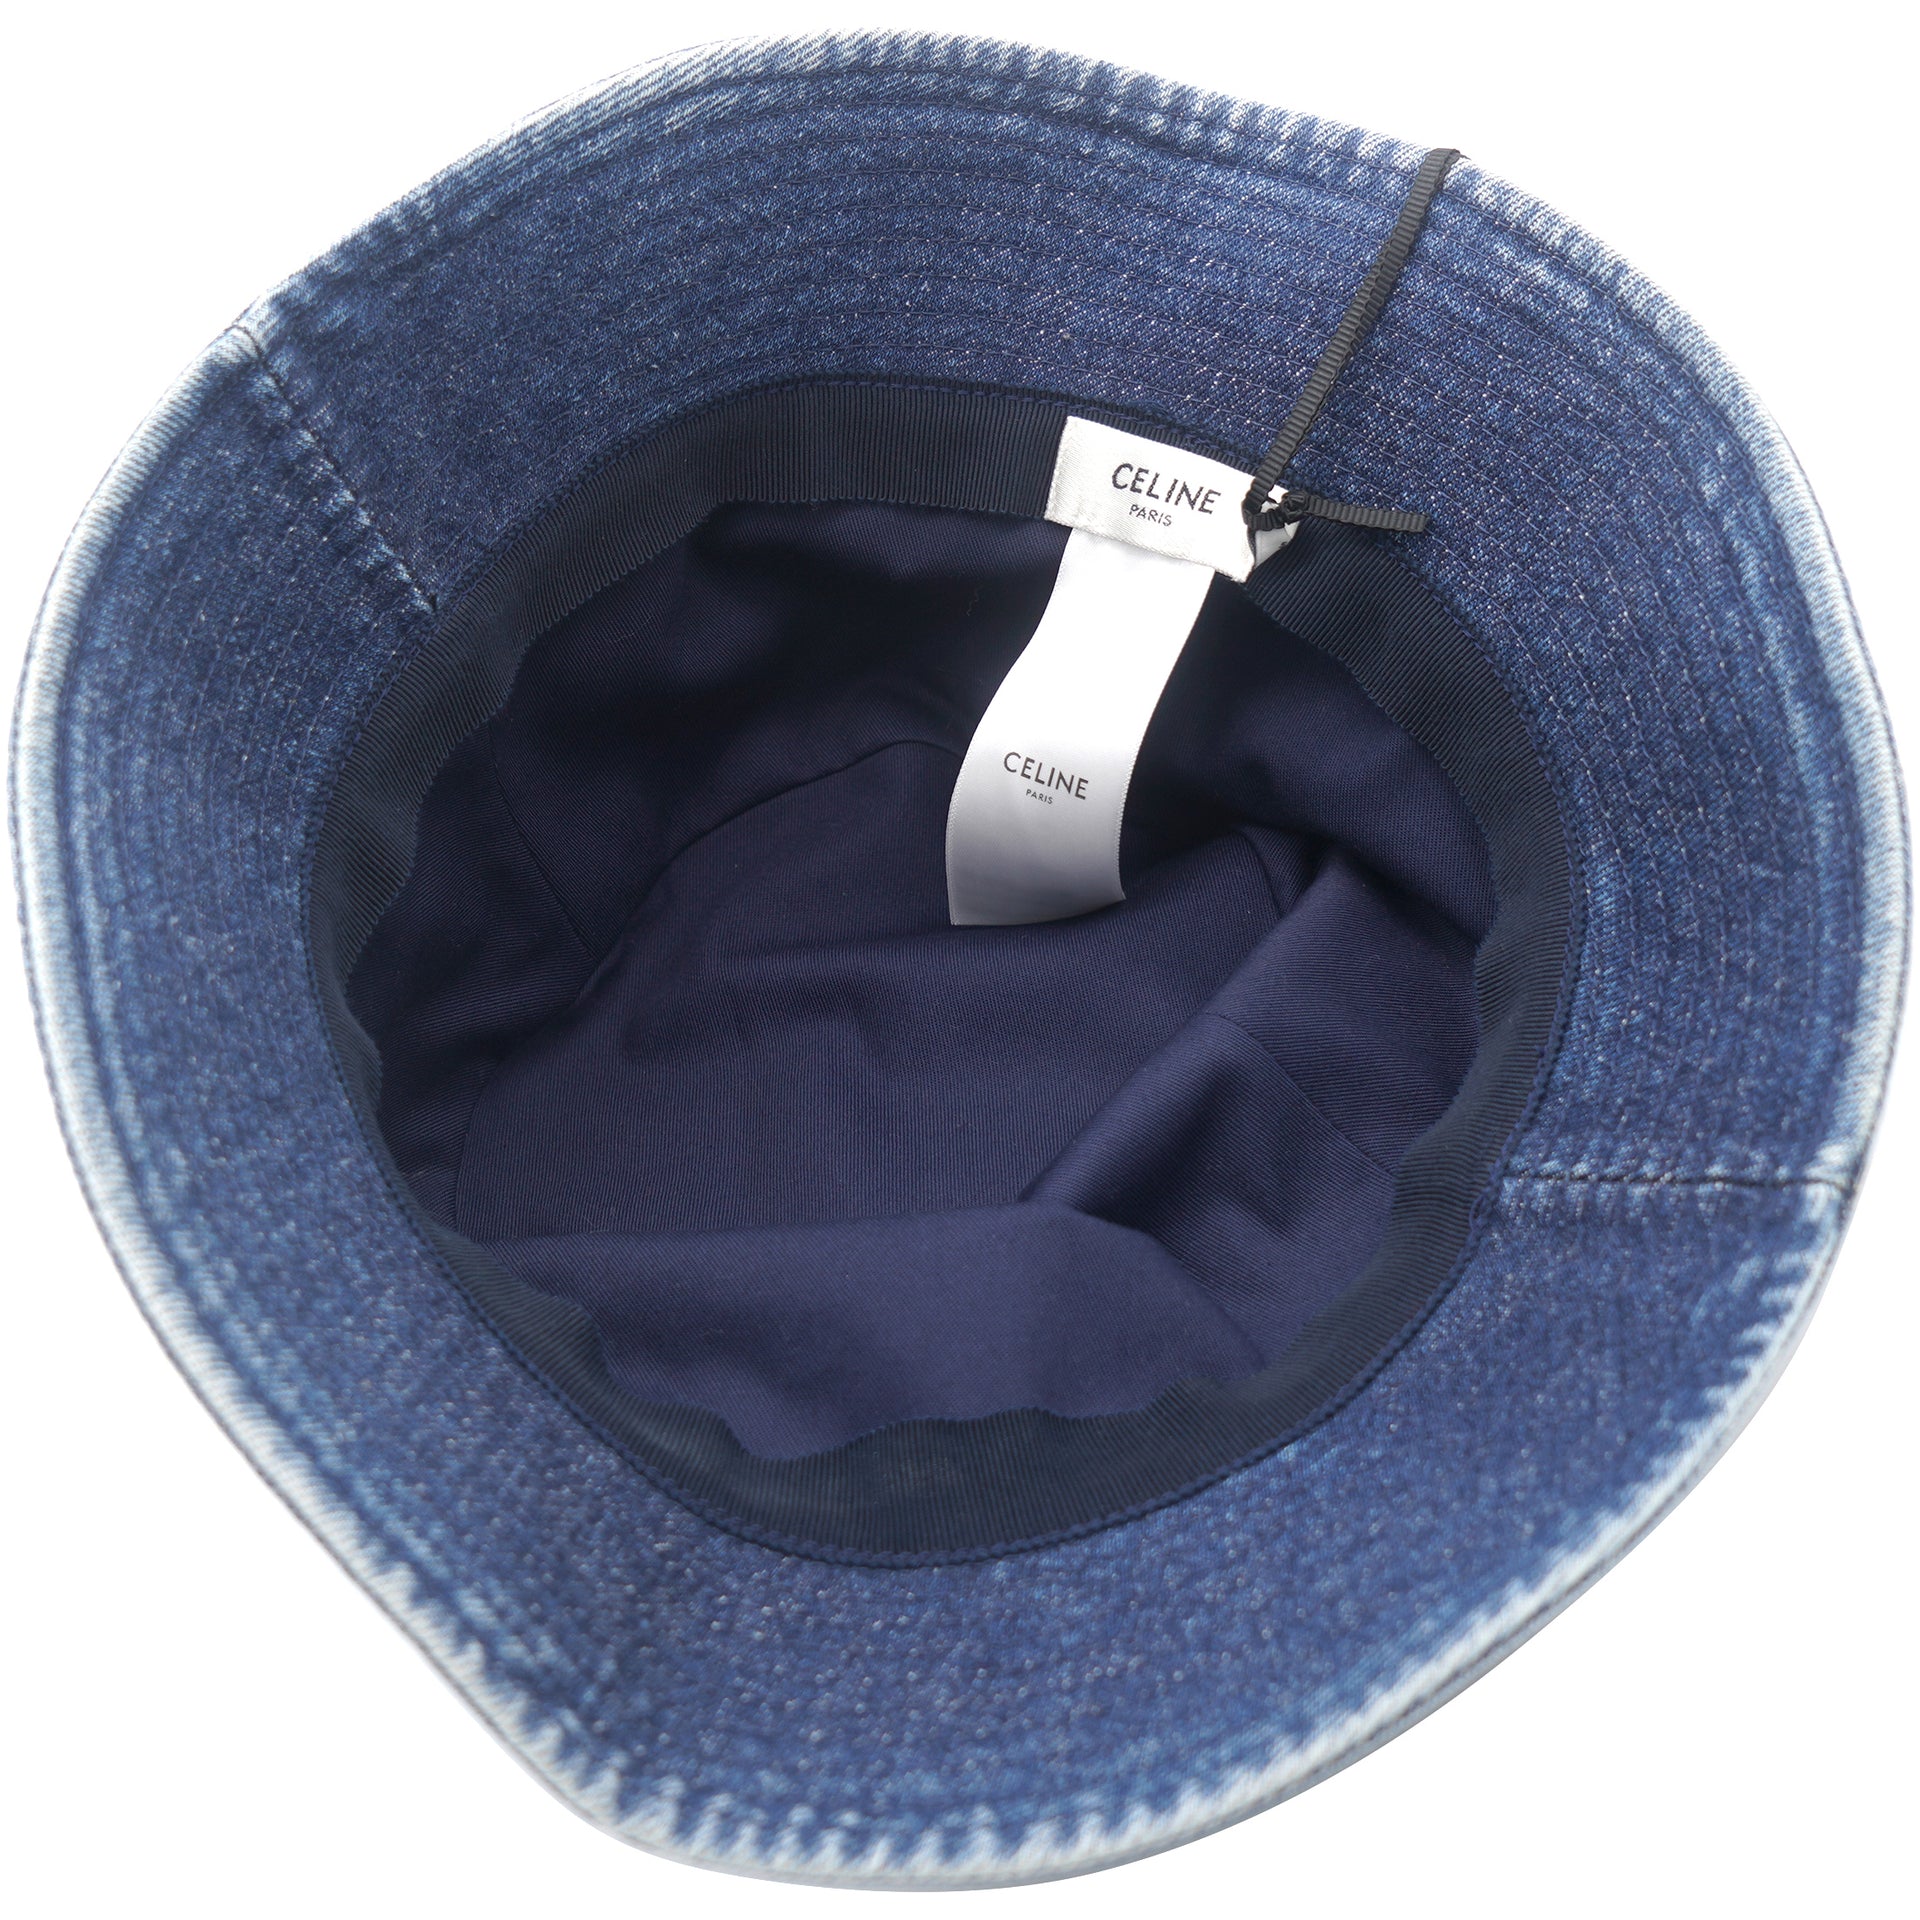 Embroidered Bucket Hat In Union Wash Denim Union Wash